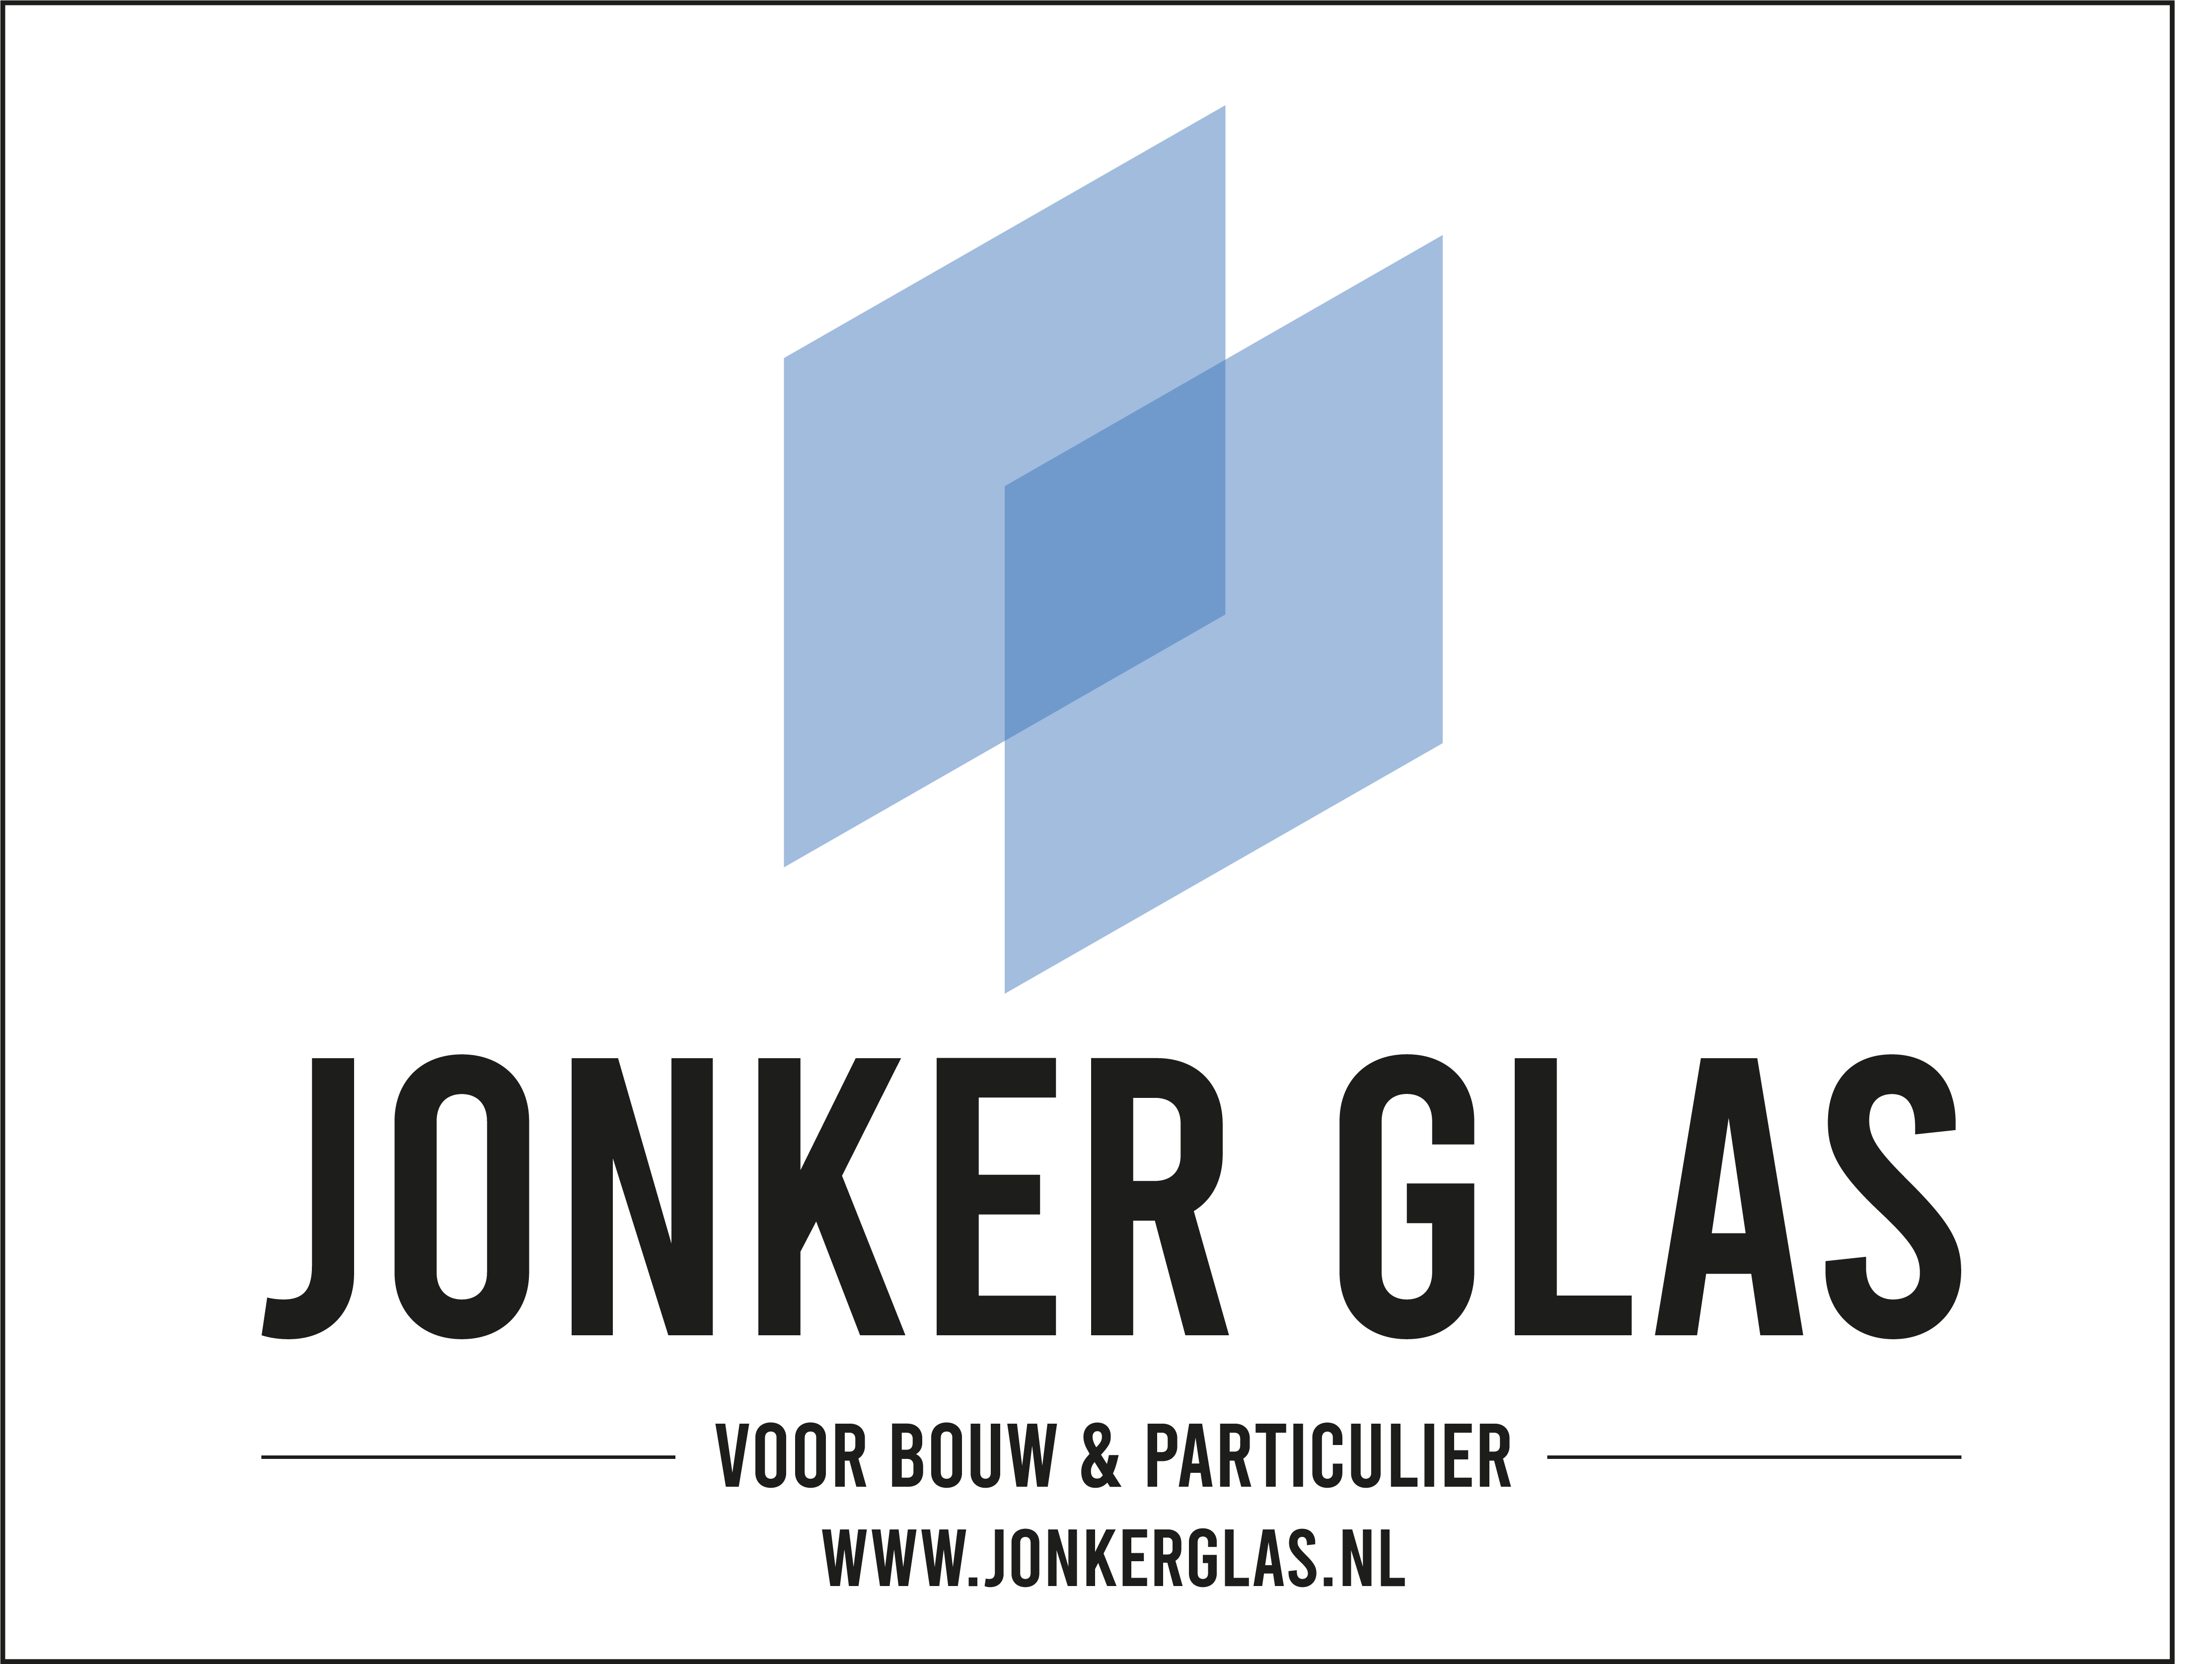 www.jonkerglas.nl